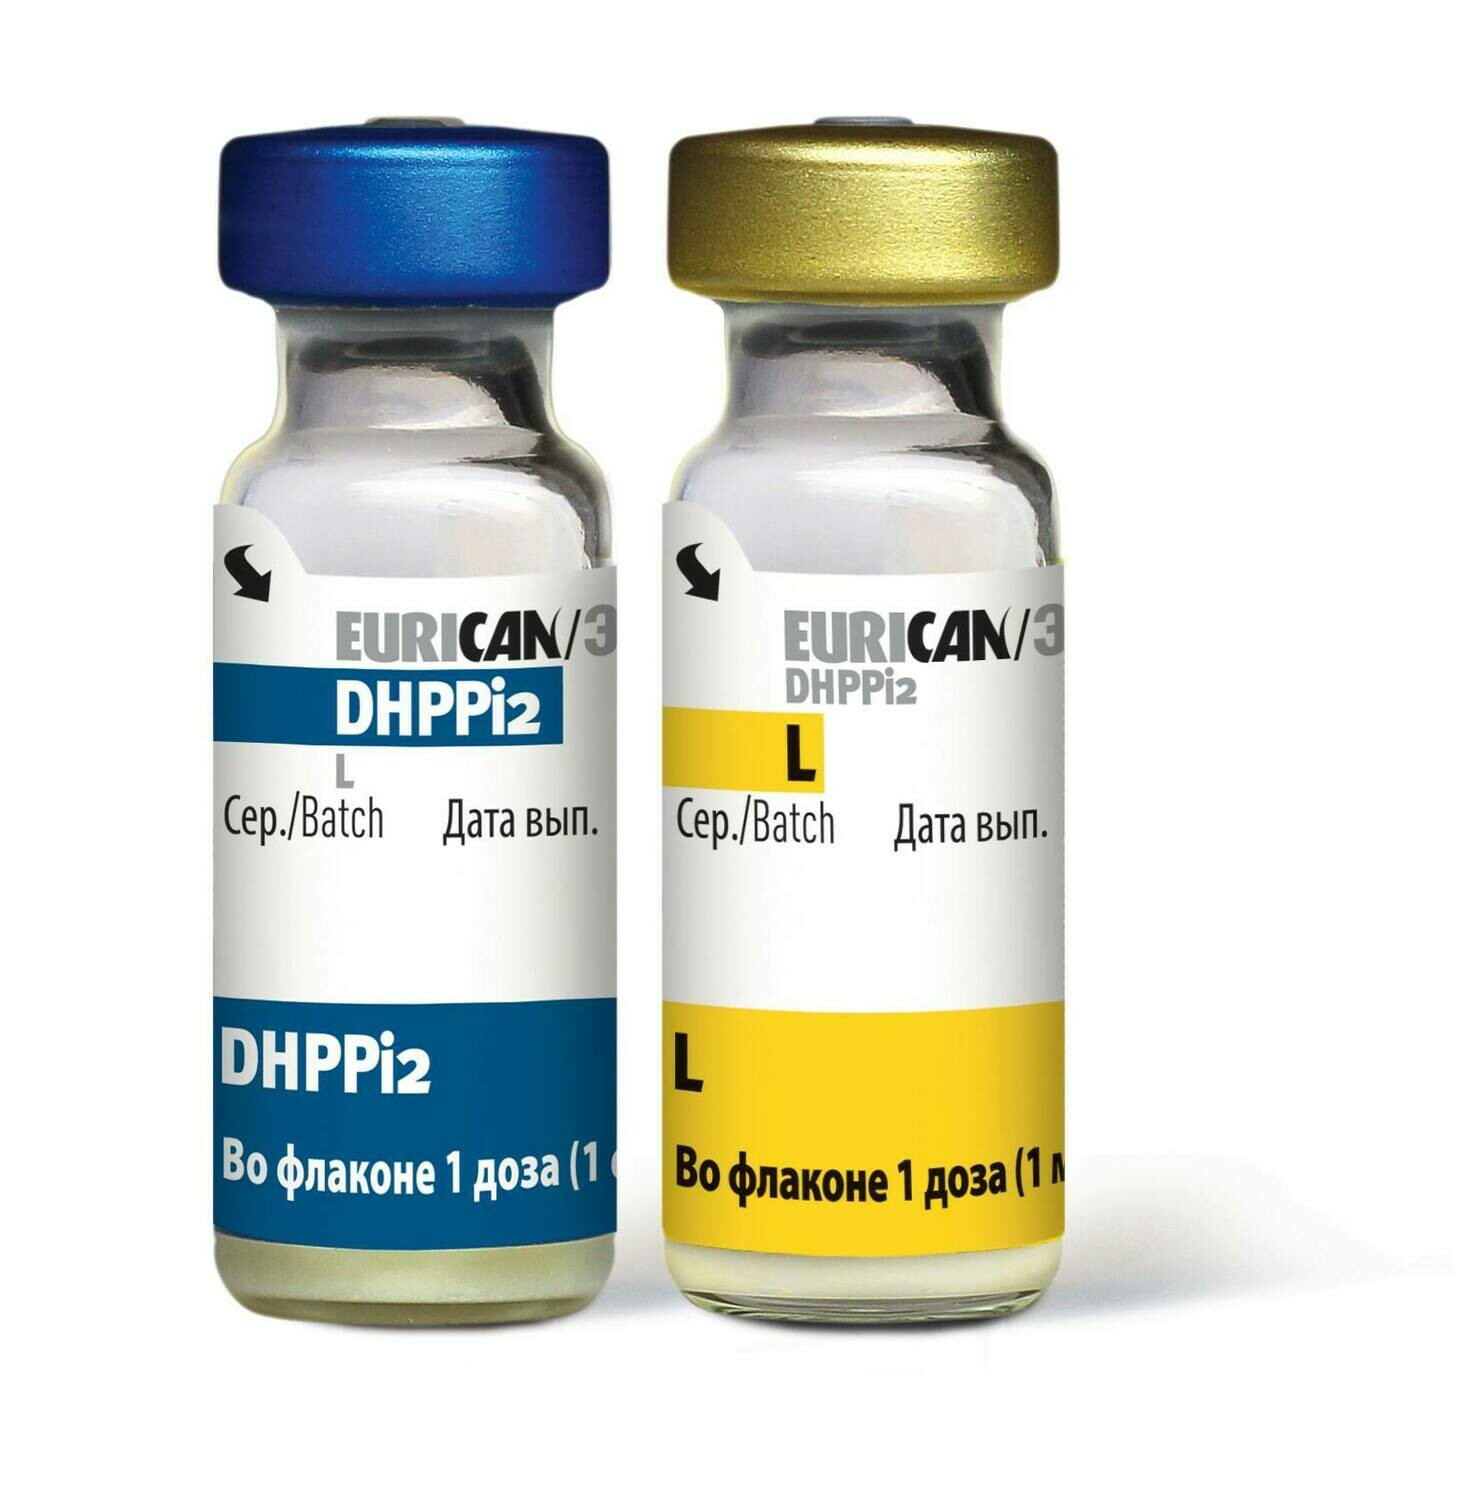 Импортные вакцины для собак. Эурикан dhppi2 вакцина для собак. Эурикан для собак dhppi2. Eurican dhppi2 производитель. Вакцина Эурикан dhppi2-LR.